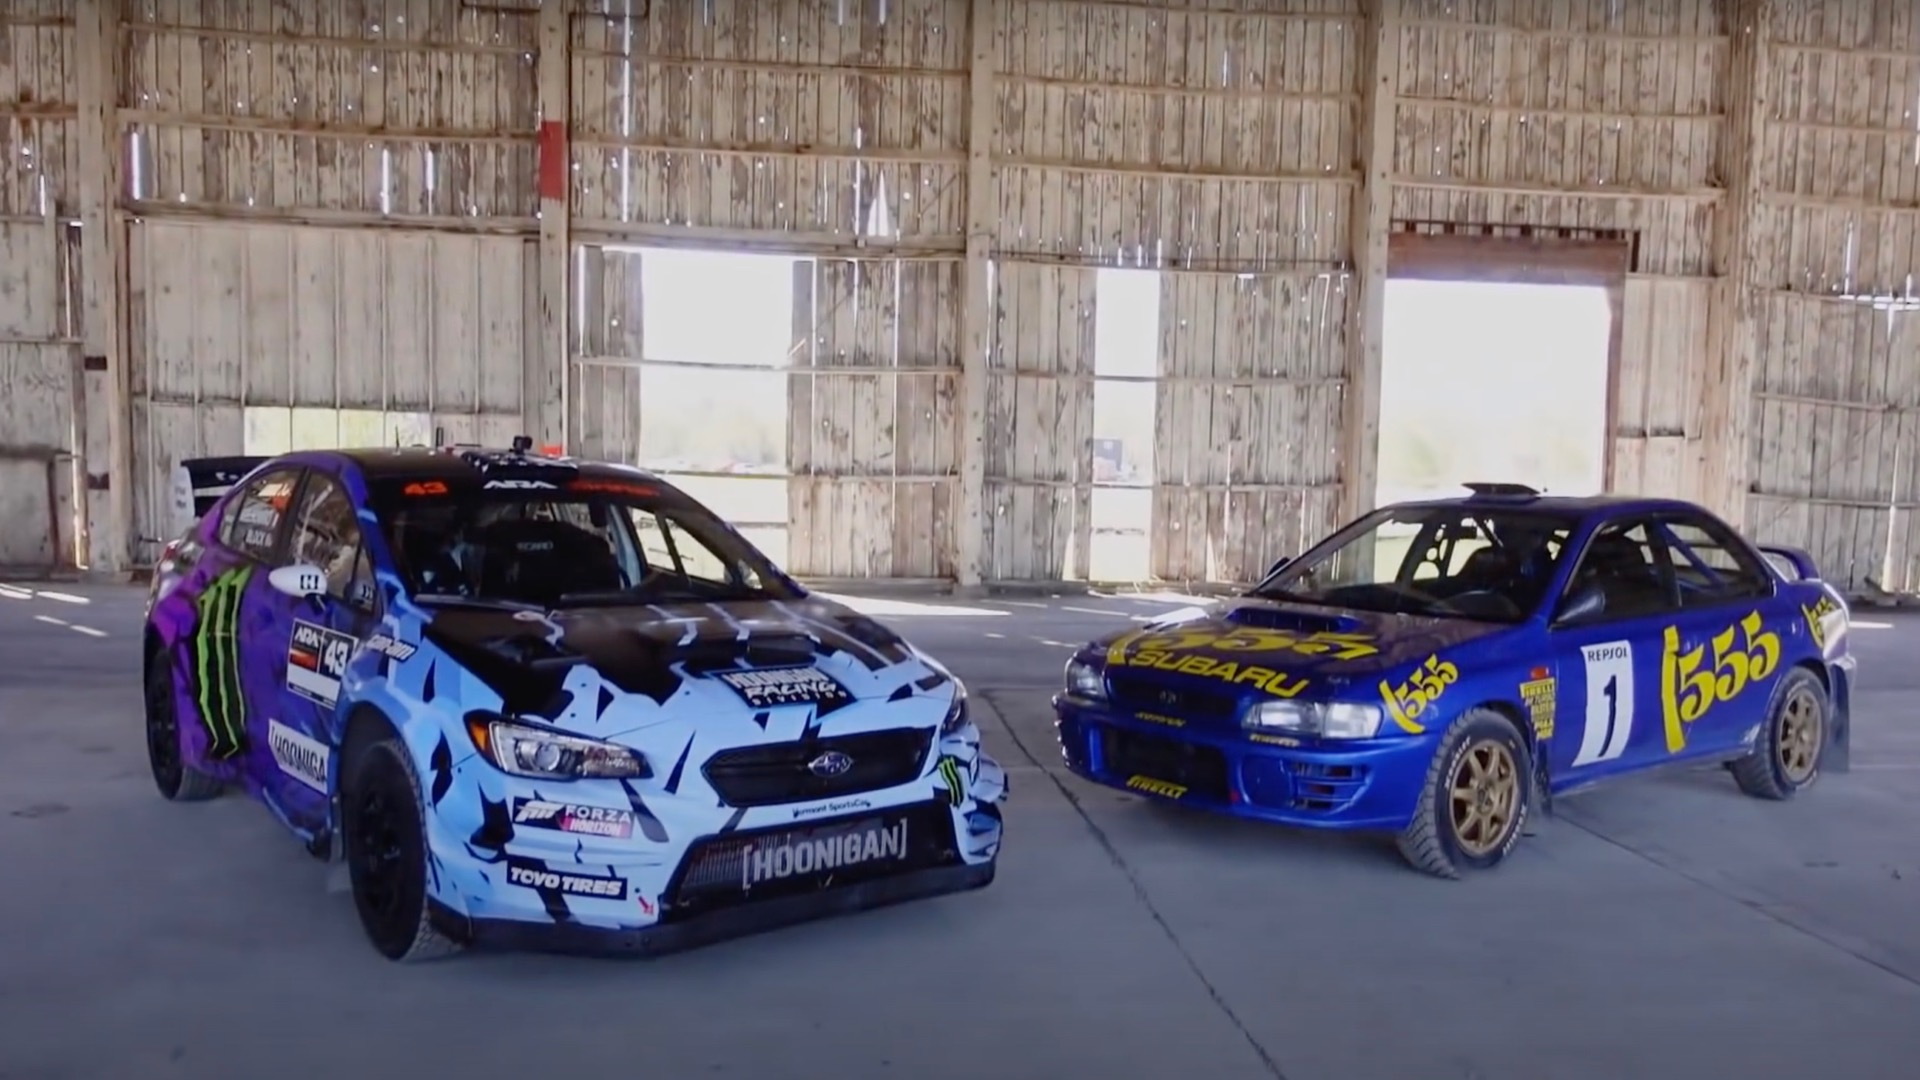 Ken Block compares 2021 Subaru WRX STI and 1997 Subaru Impreza rally cars